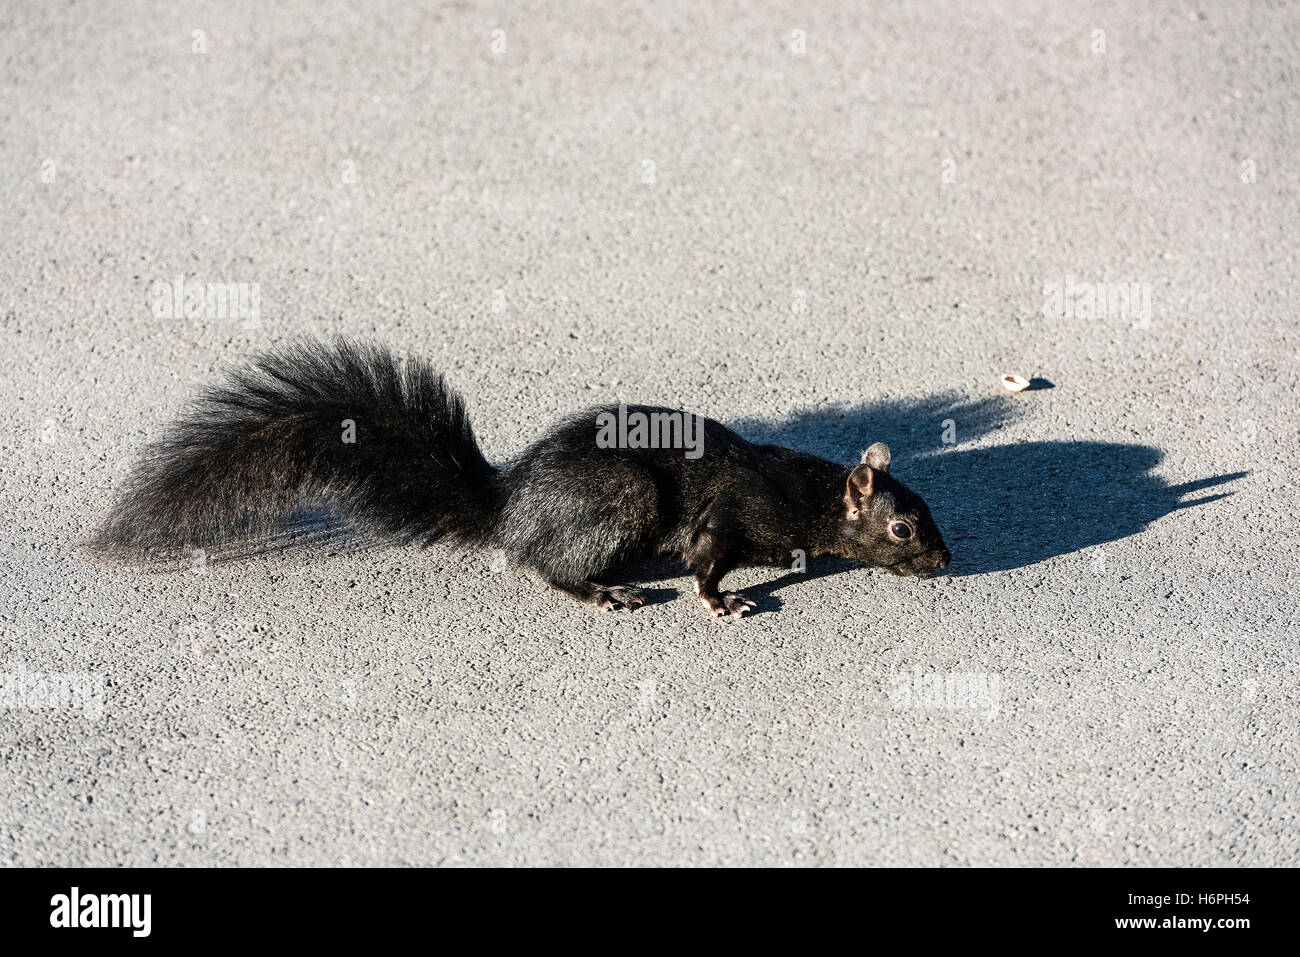 Black squirrel. Stock Photo